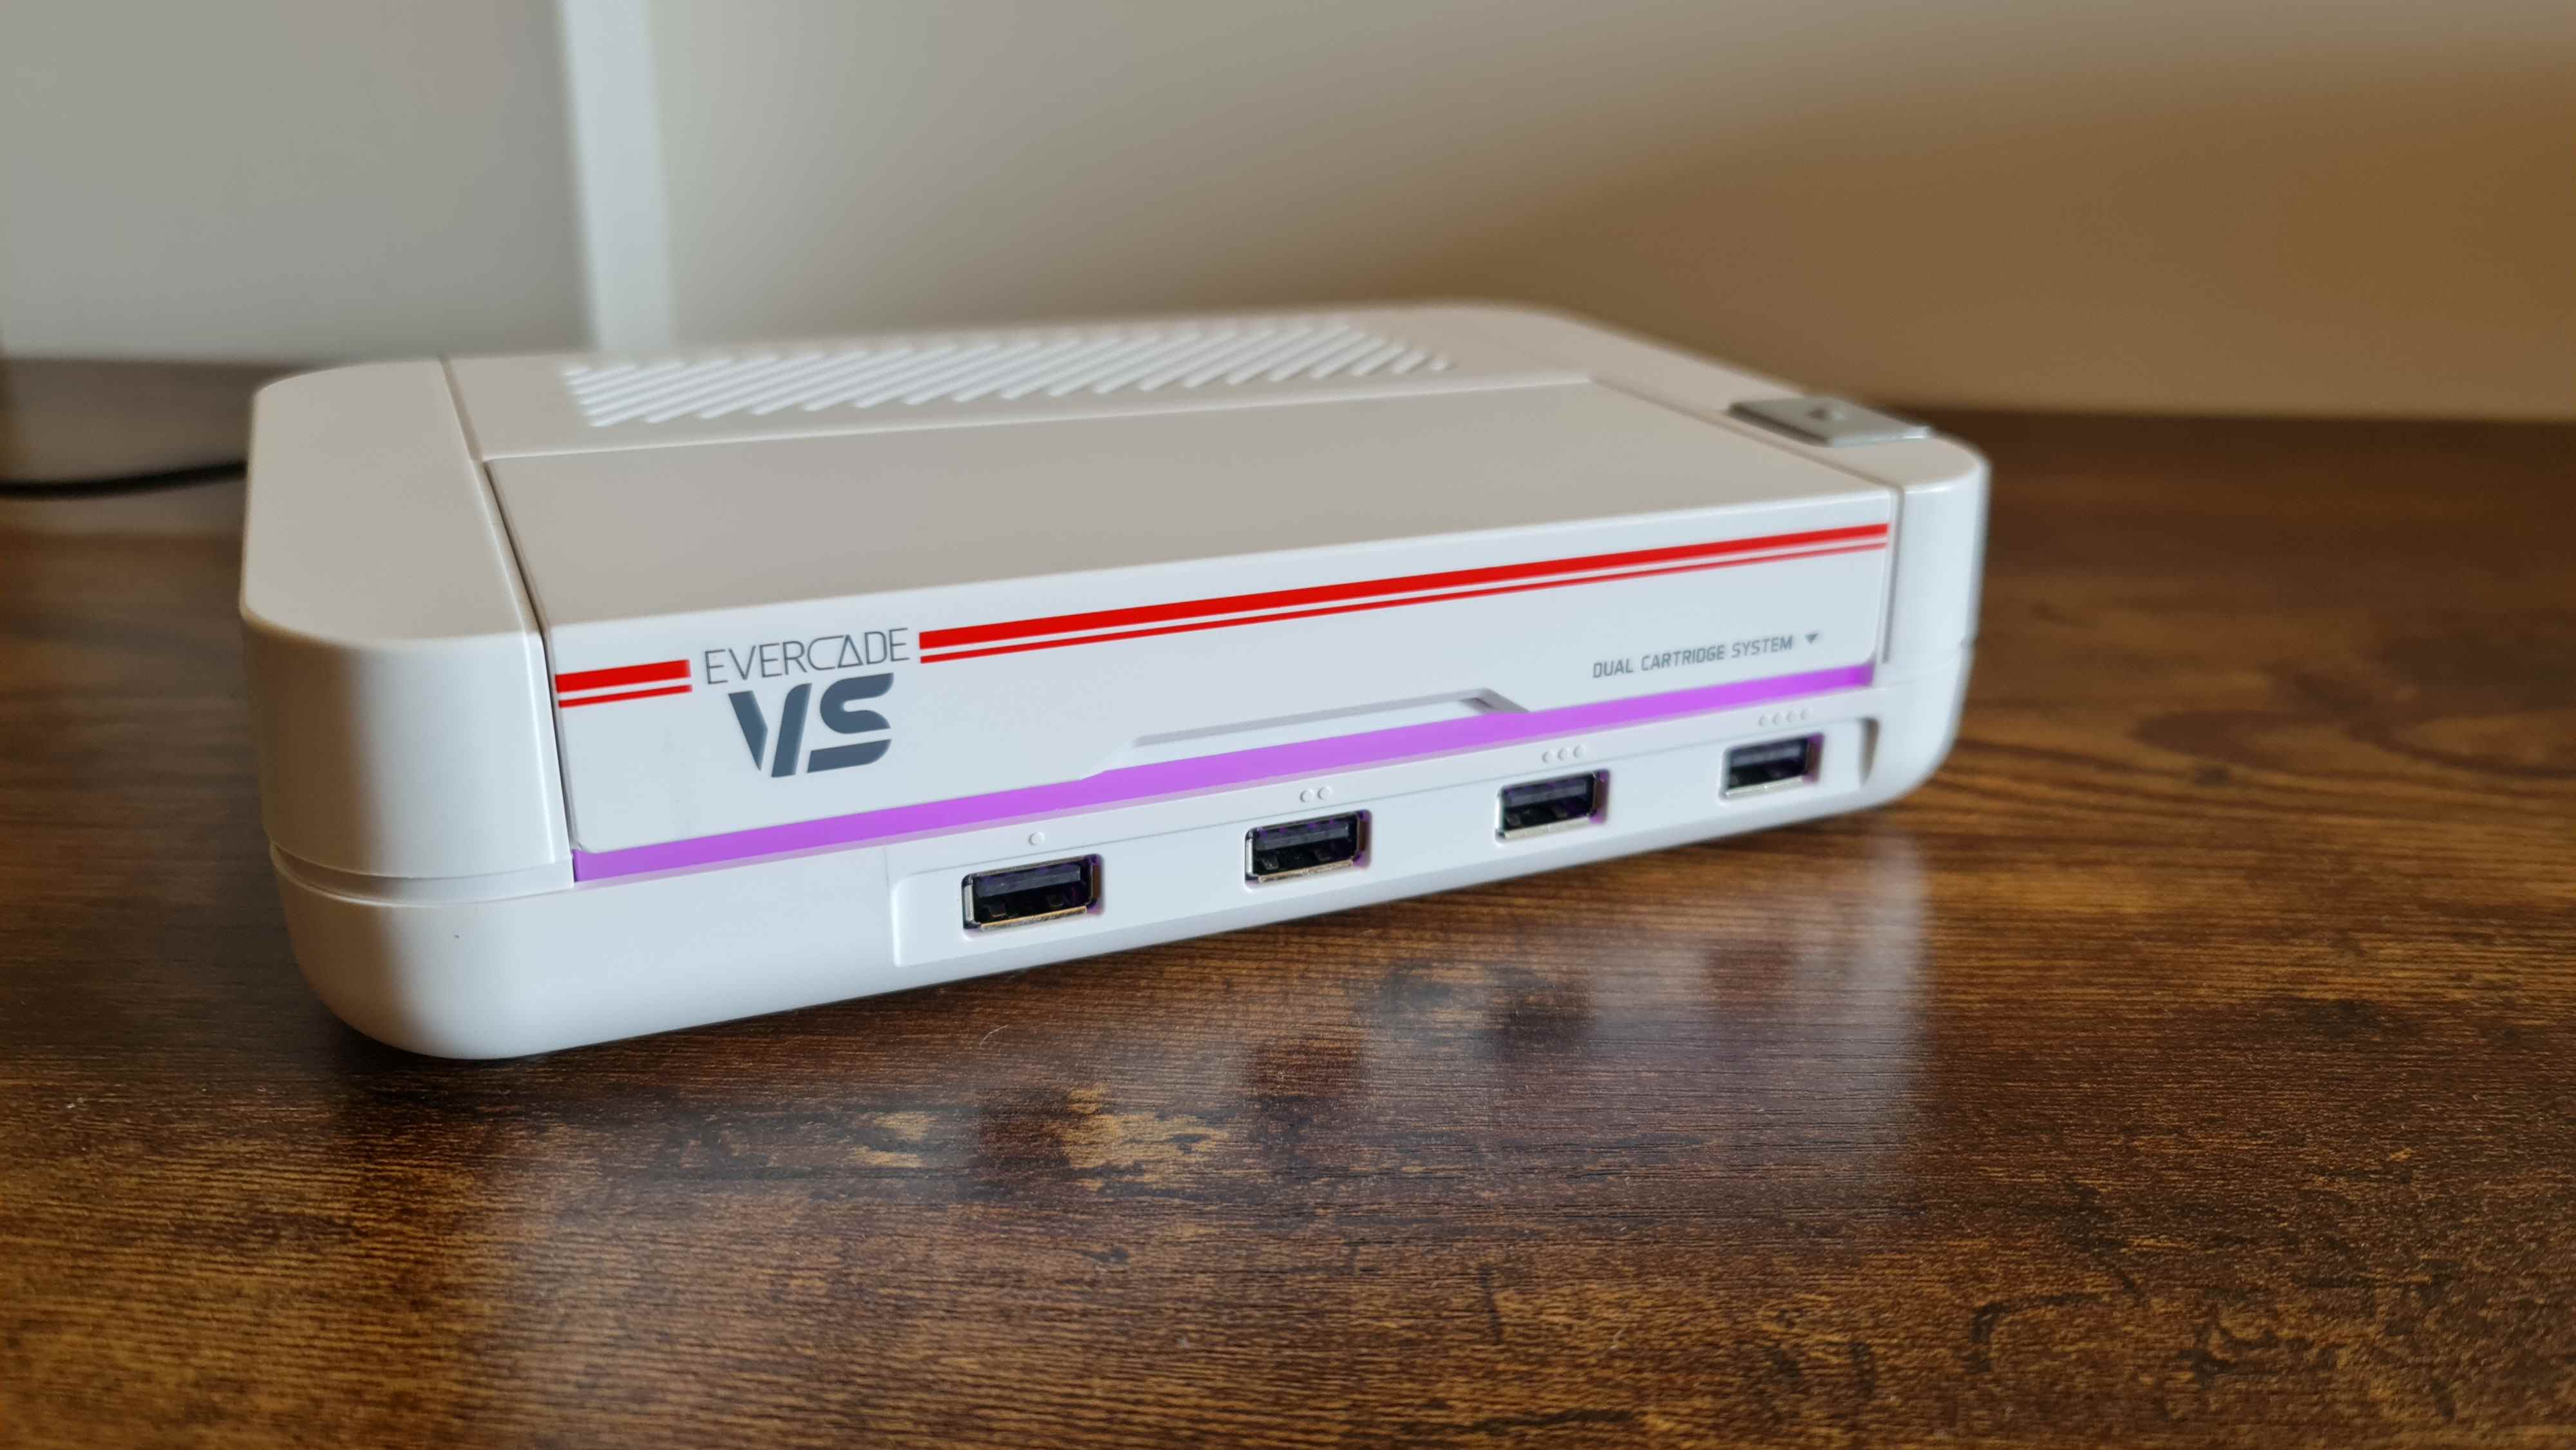 Console de jeu Evercade VS allumée avec une lumière violette